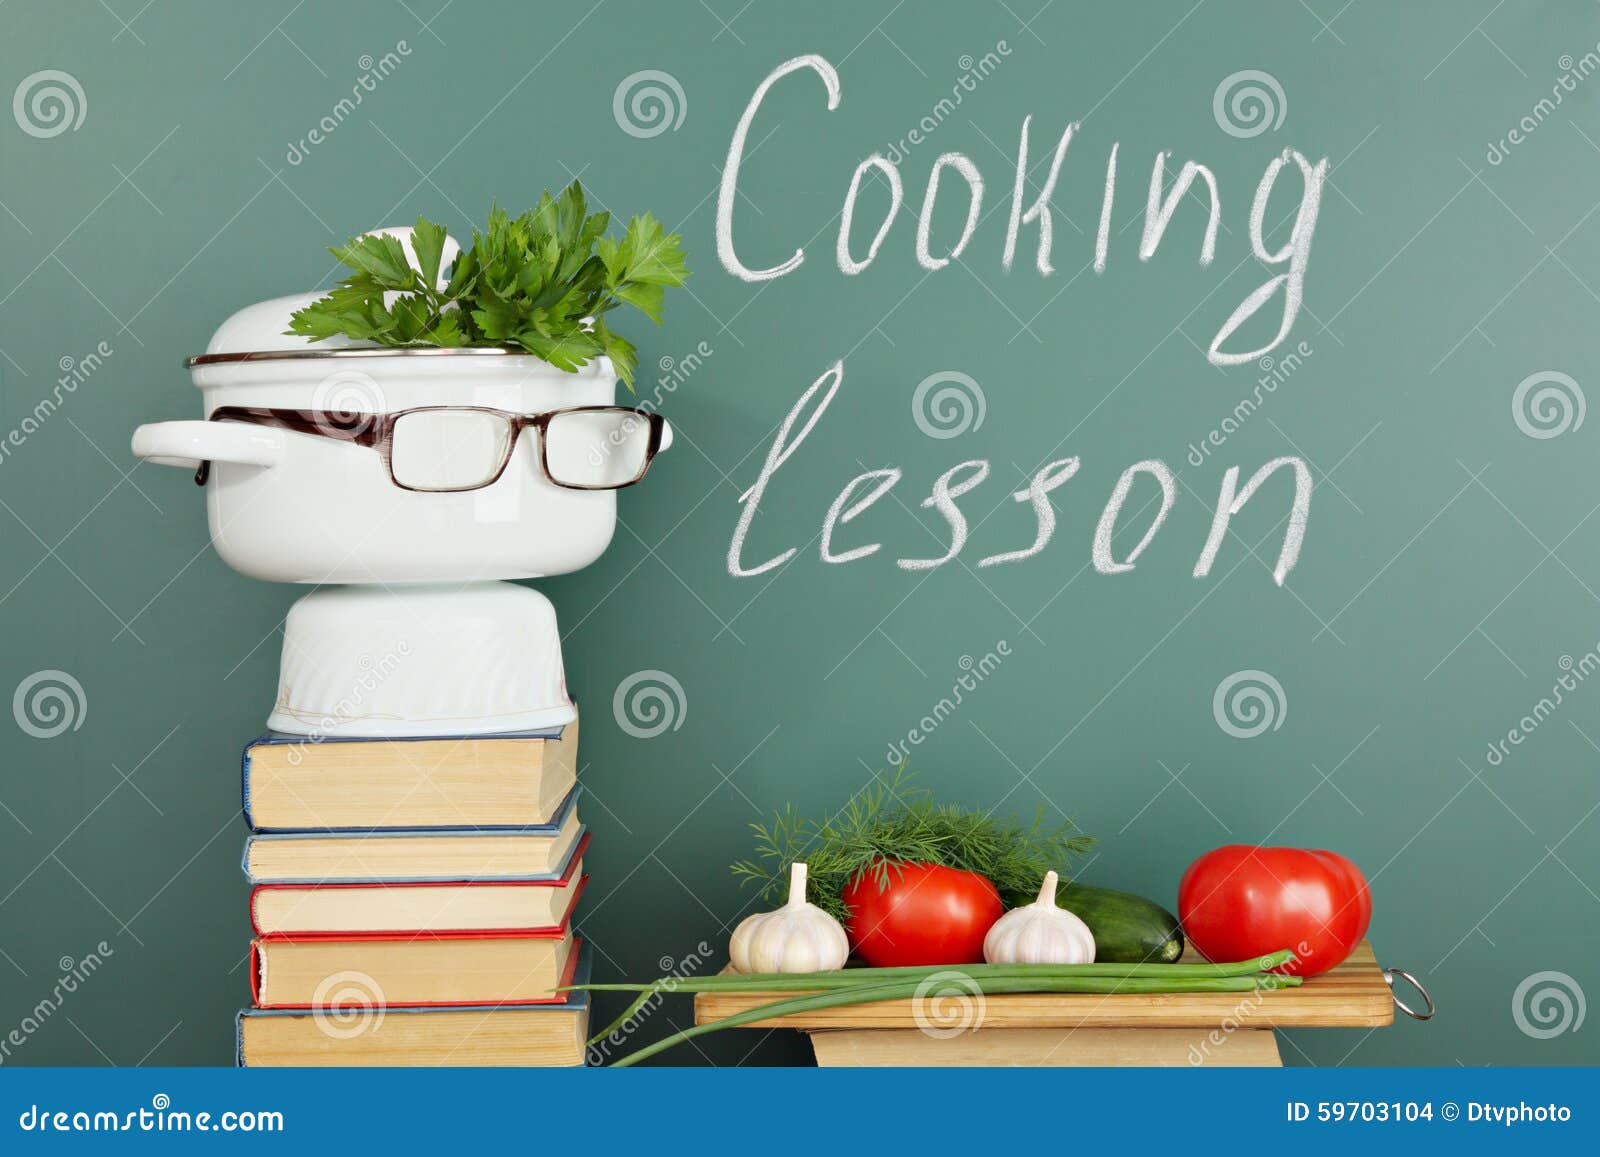 Kochen von Lektion stock abbildung. Illustration von gescheit - 59703104